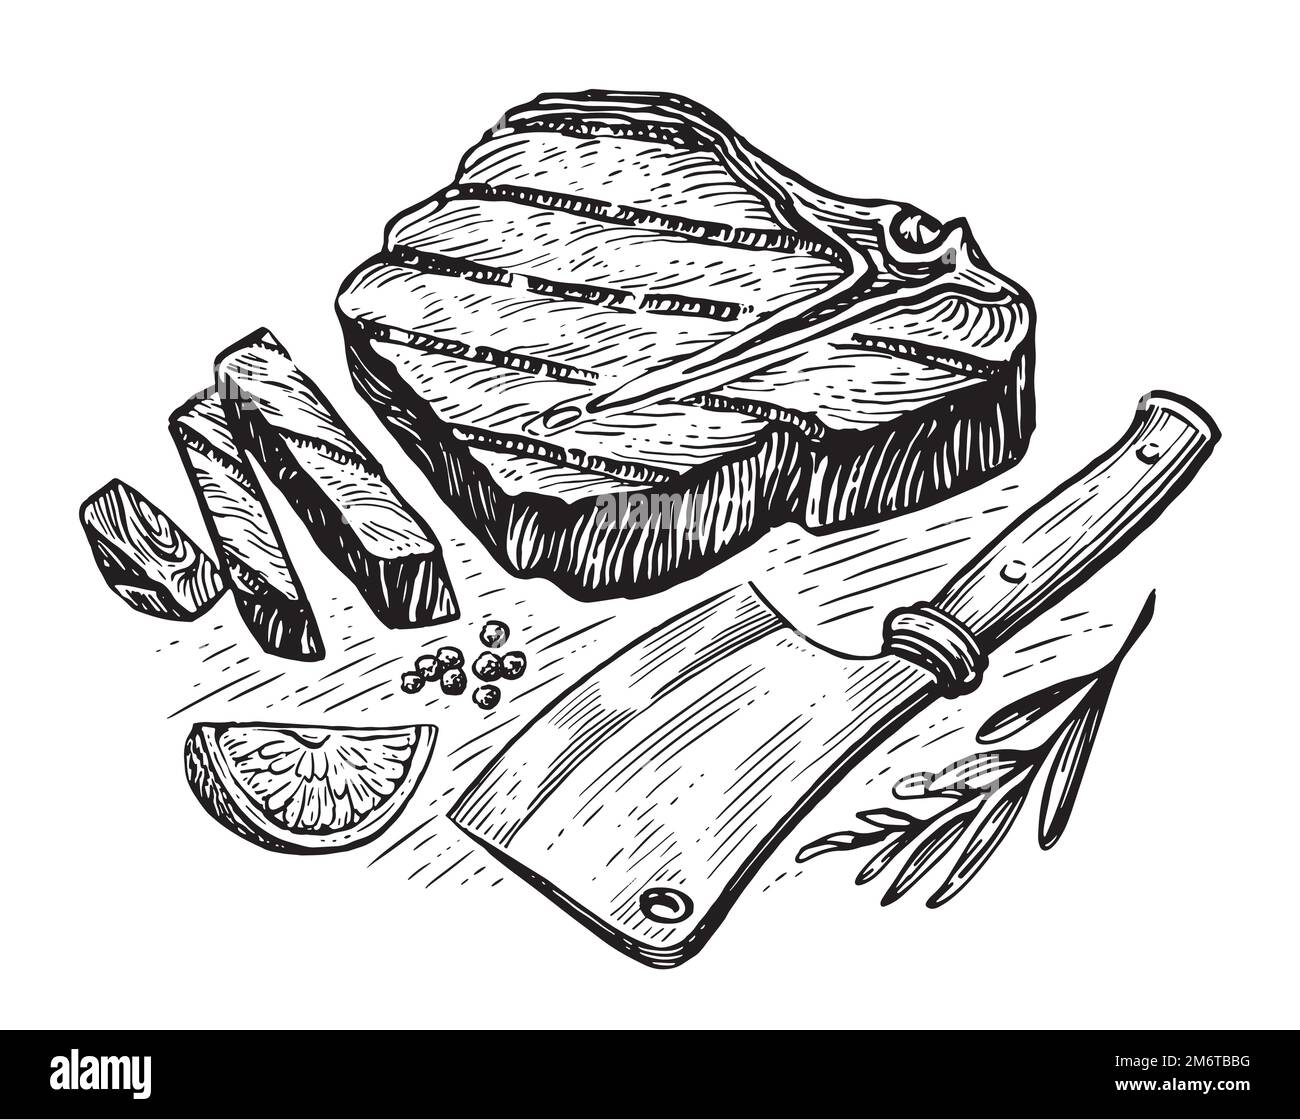 Gegrilltes Rindfleisch-Steak und Fleischerbeil. Kochkonzept. Skizzieren Sie die von Hand gezeichnete Vektordarstellung Stock Vektor